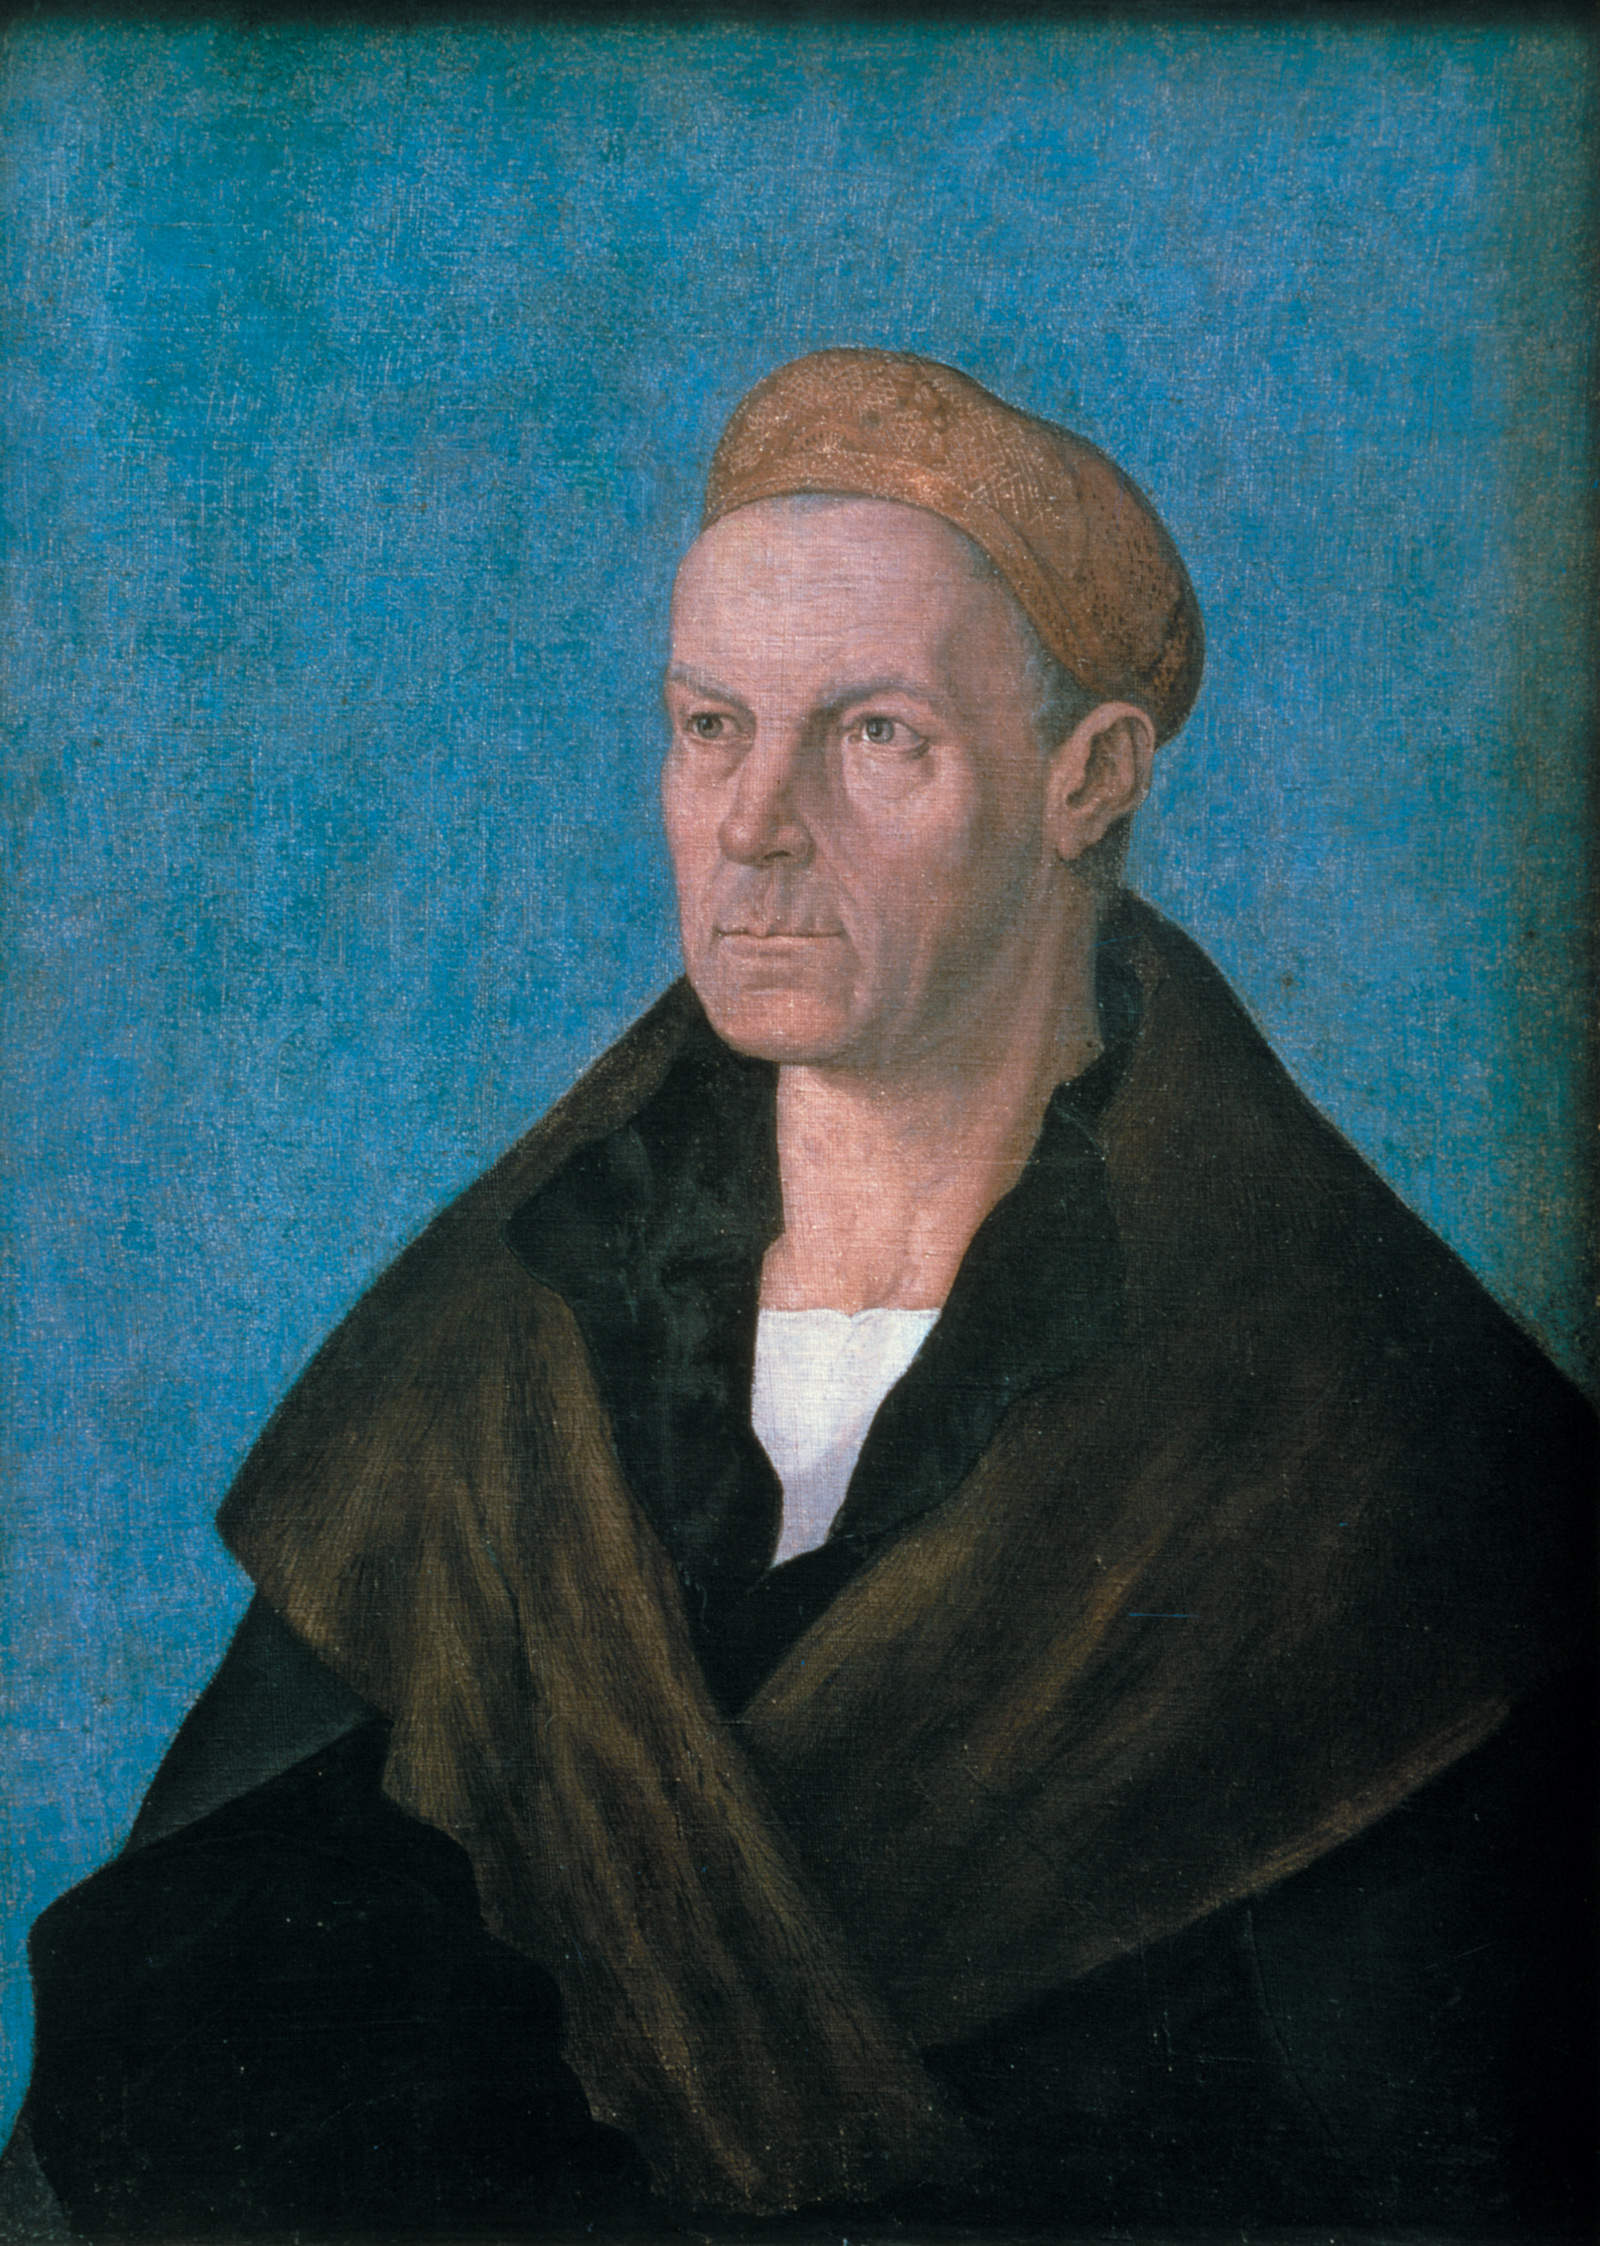 Jacob Fugger; portrait by Albrecht Dürer, circa 1520